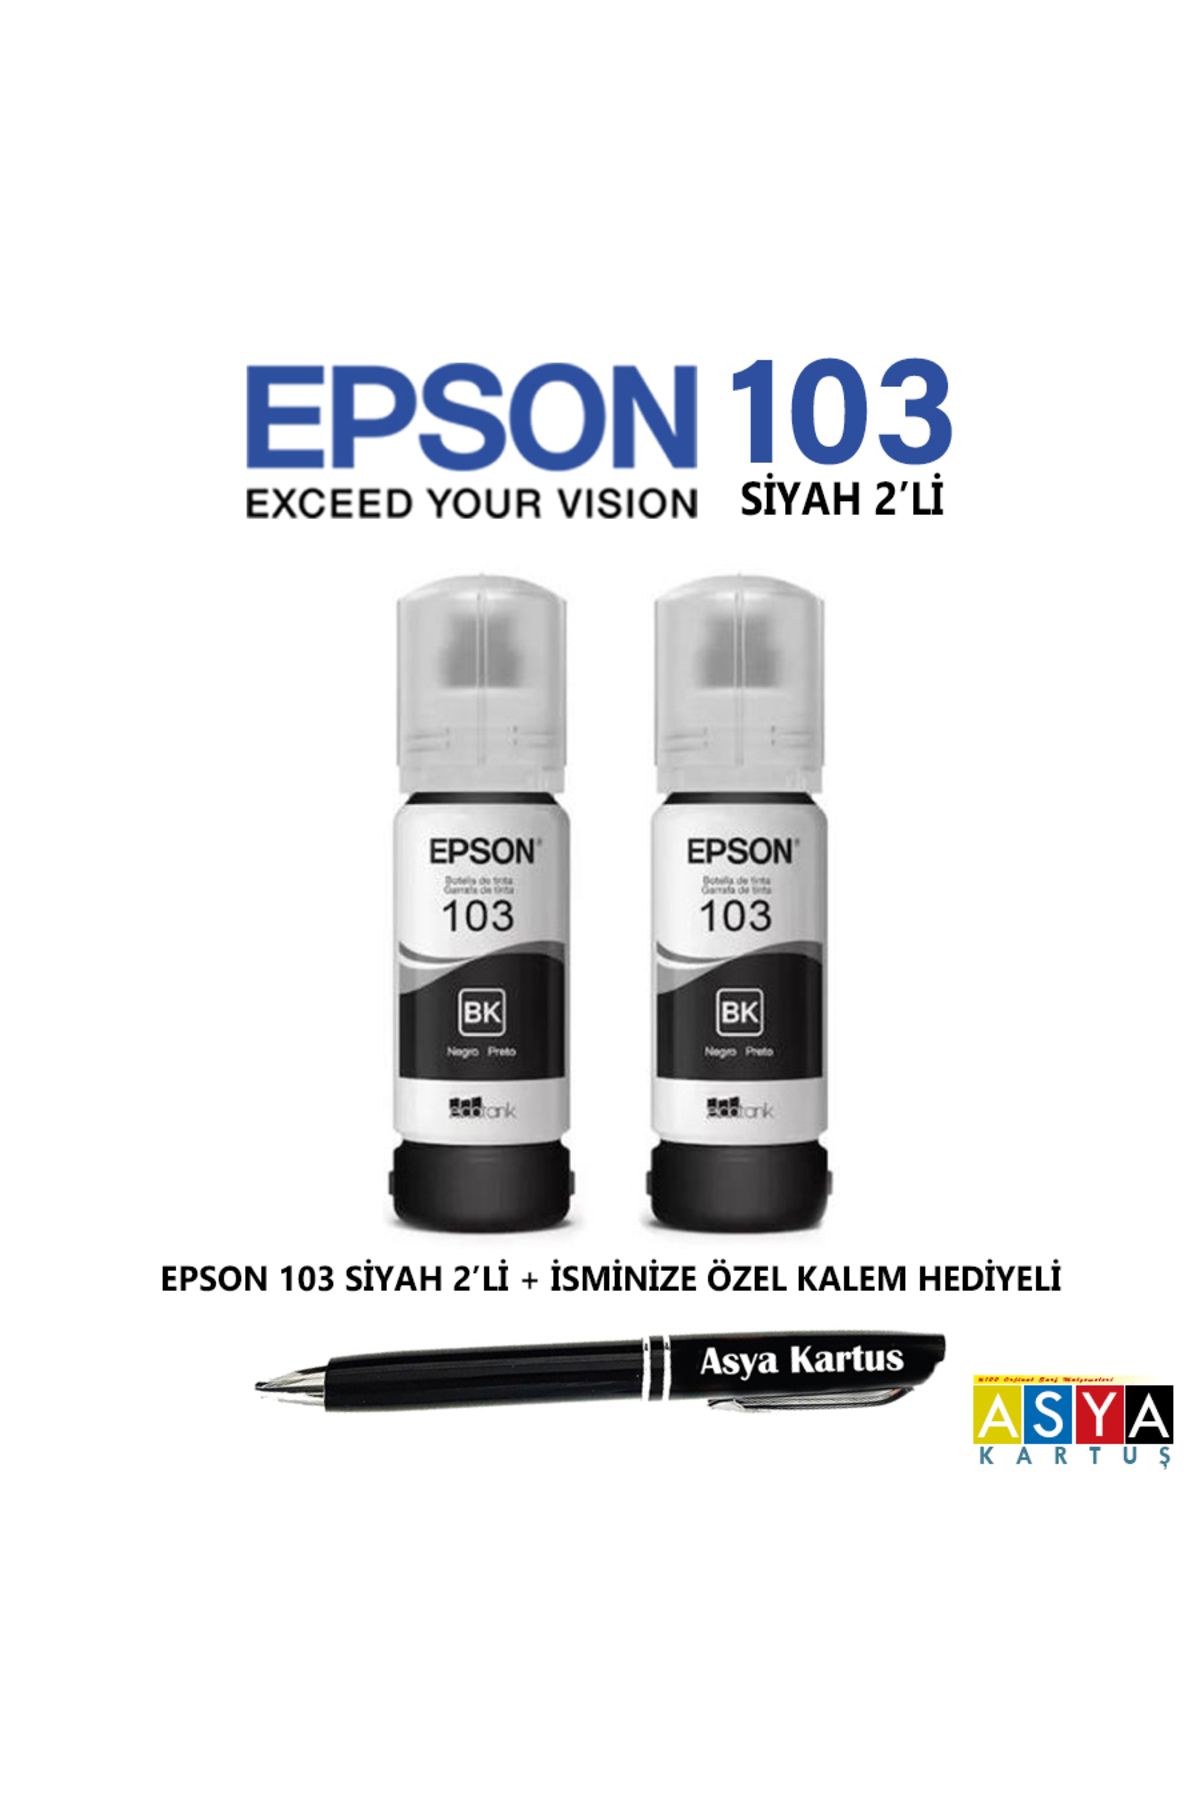 Epson 103 siyah mürekkep kartuşu, Epson L3252 yazıcı uyumlu 2'li siyah kartuş